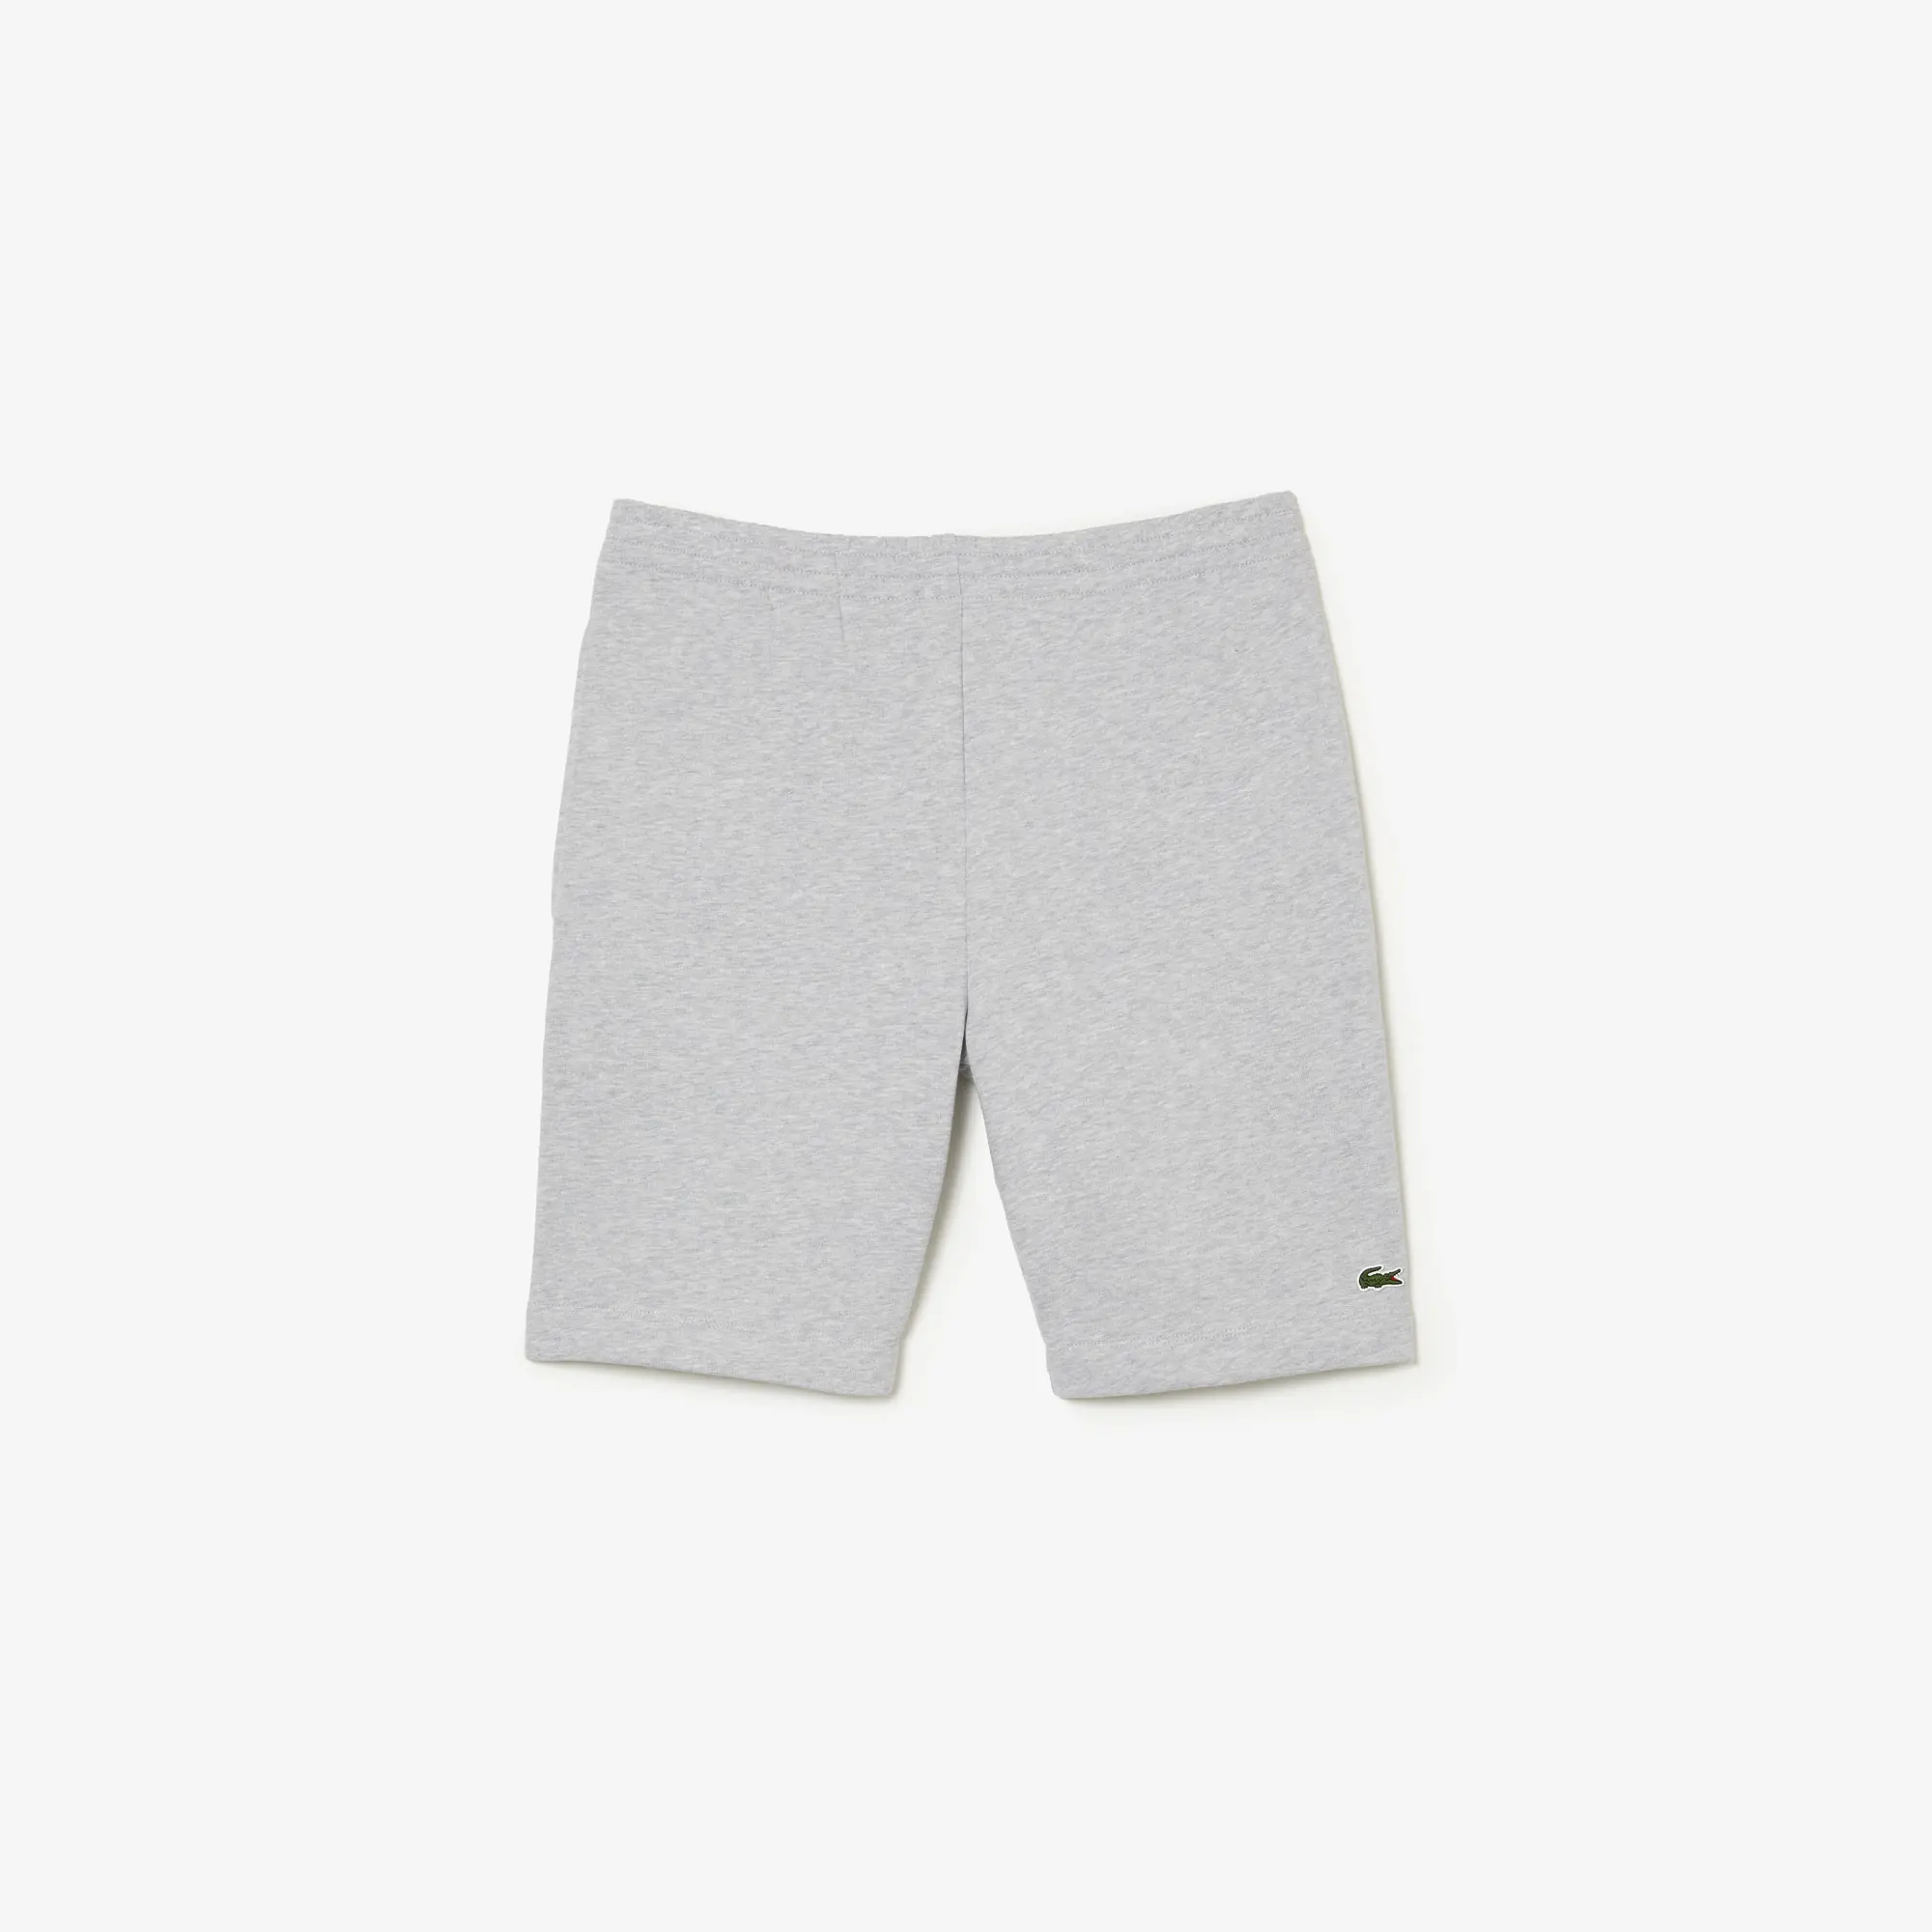 Lacoste Shorts de hombre Lacoste en felpa de algodón ecológico cepillado. 2